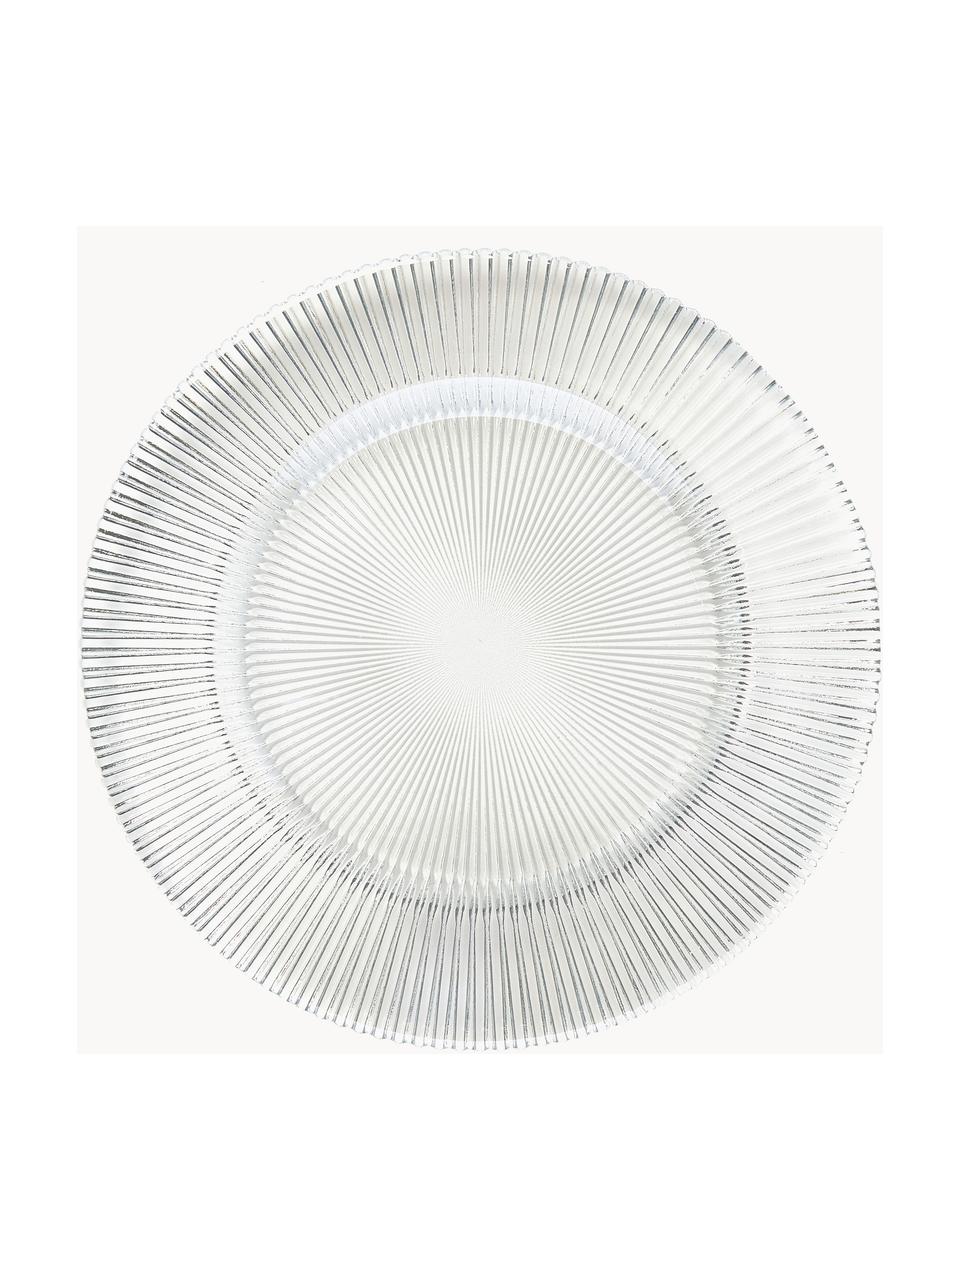 Skleněné snídaňové talíře s reliéfním vzorem Luce, 6 ks, Sklo, Transparentní, Ø 21 cm, V 2 cm